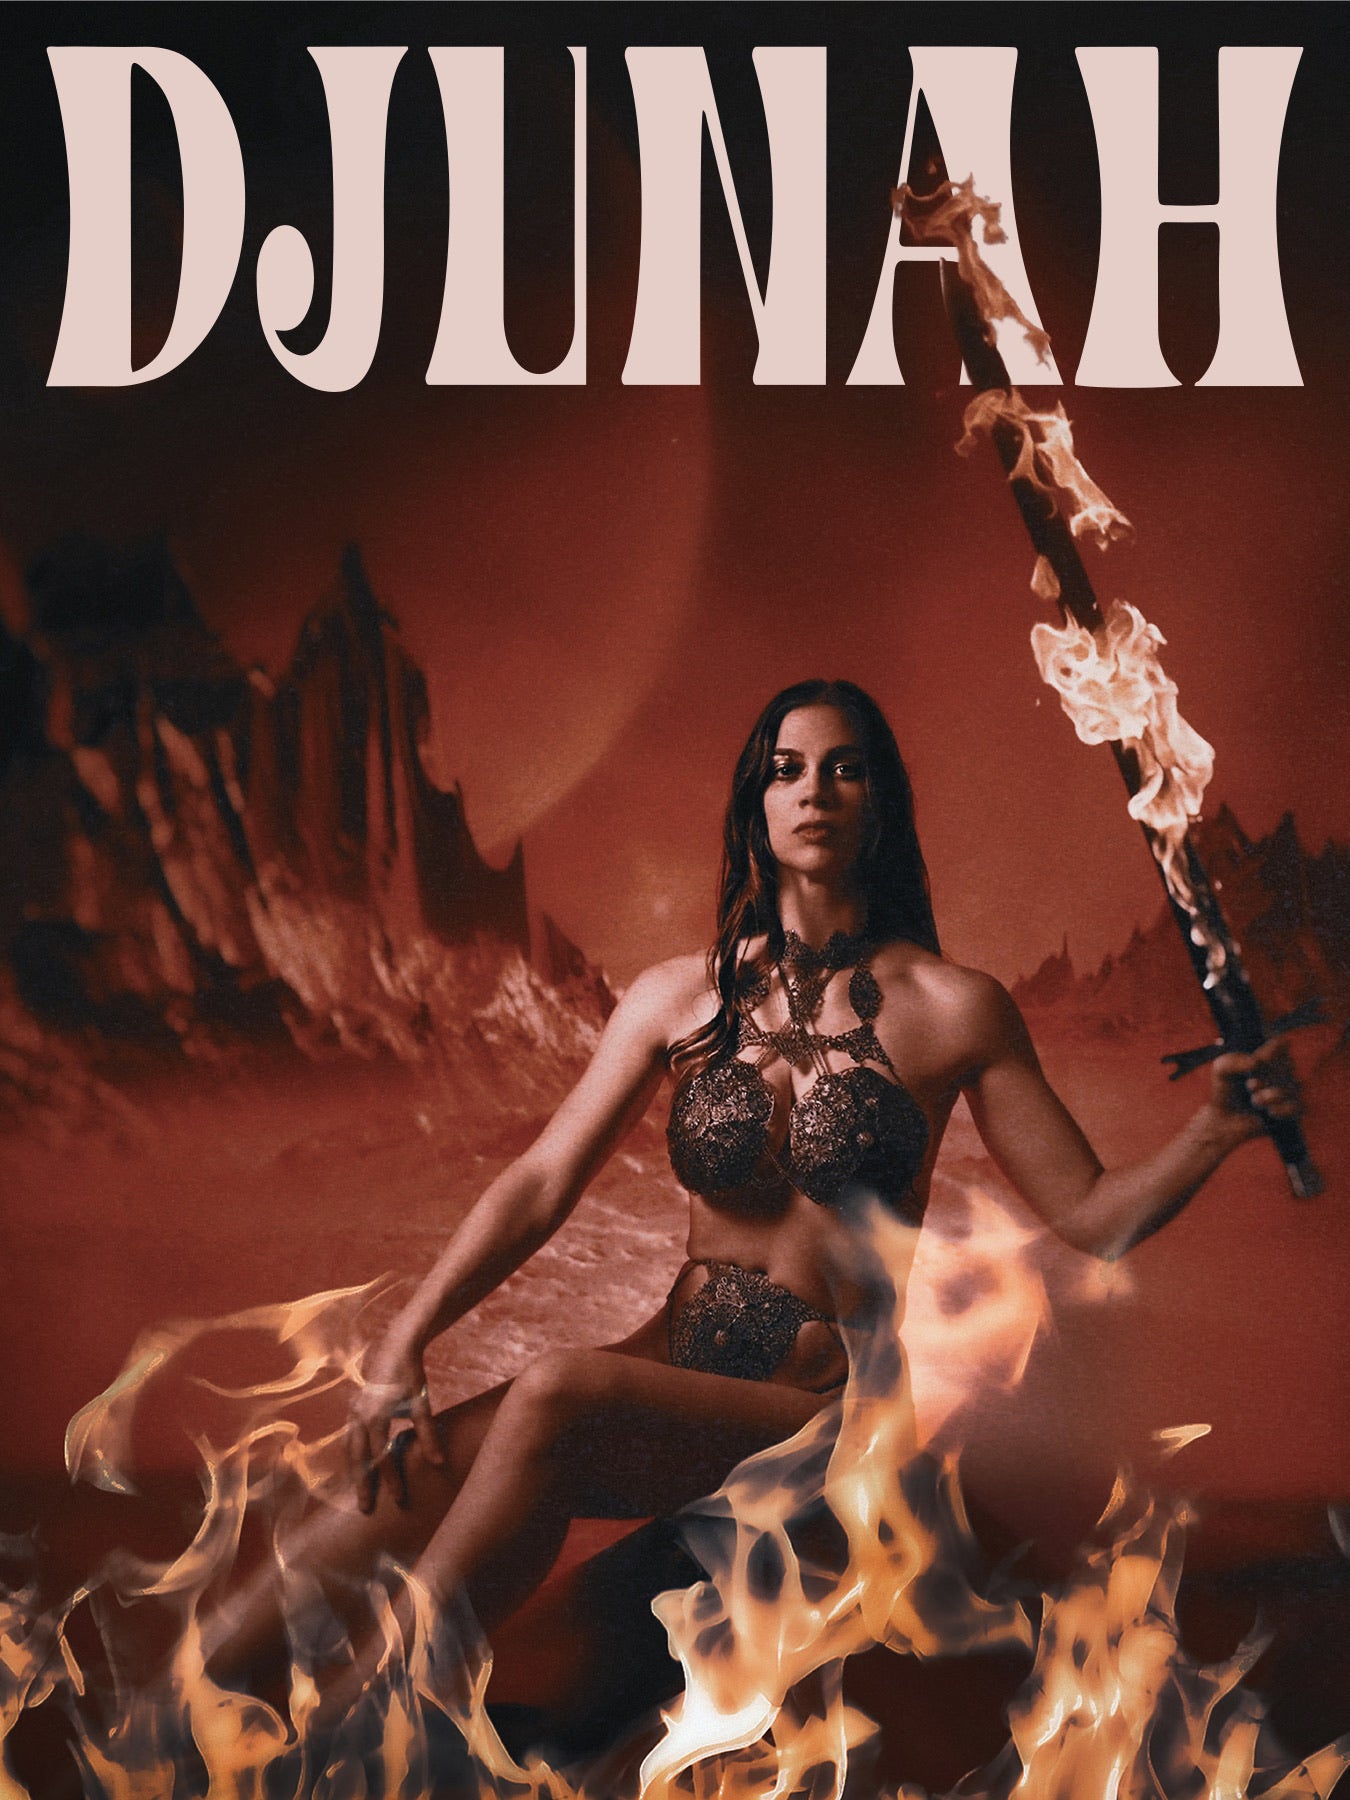 Flaming sword poster of Djunah singer guitarist Donna Diane for the Chicago band Djuna